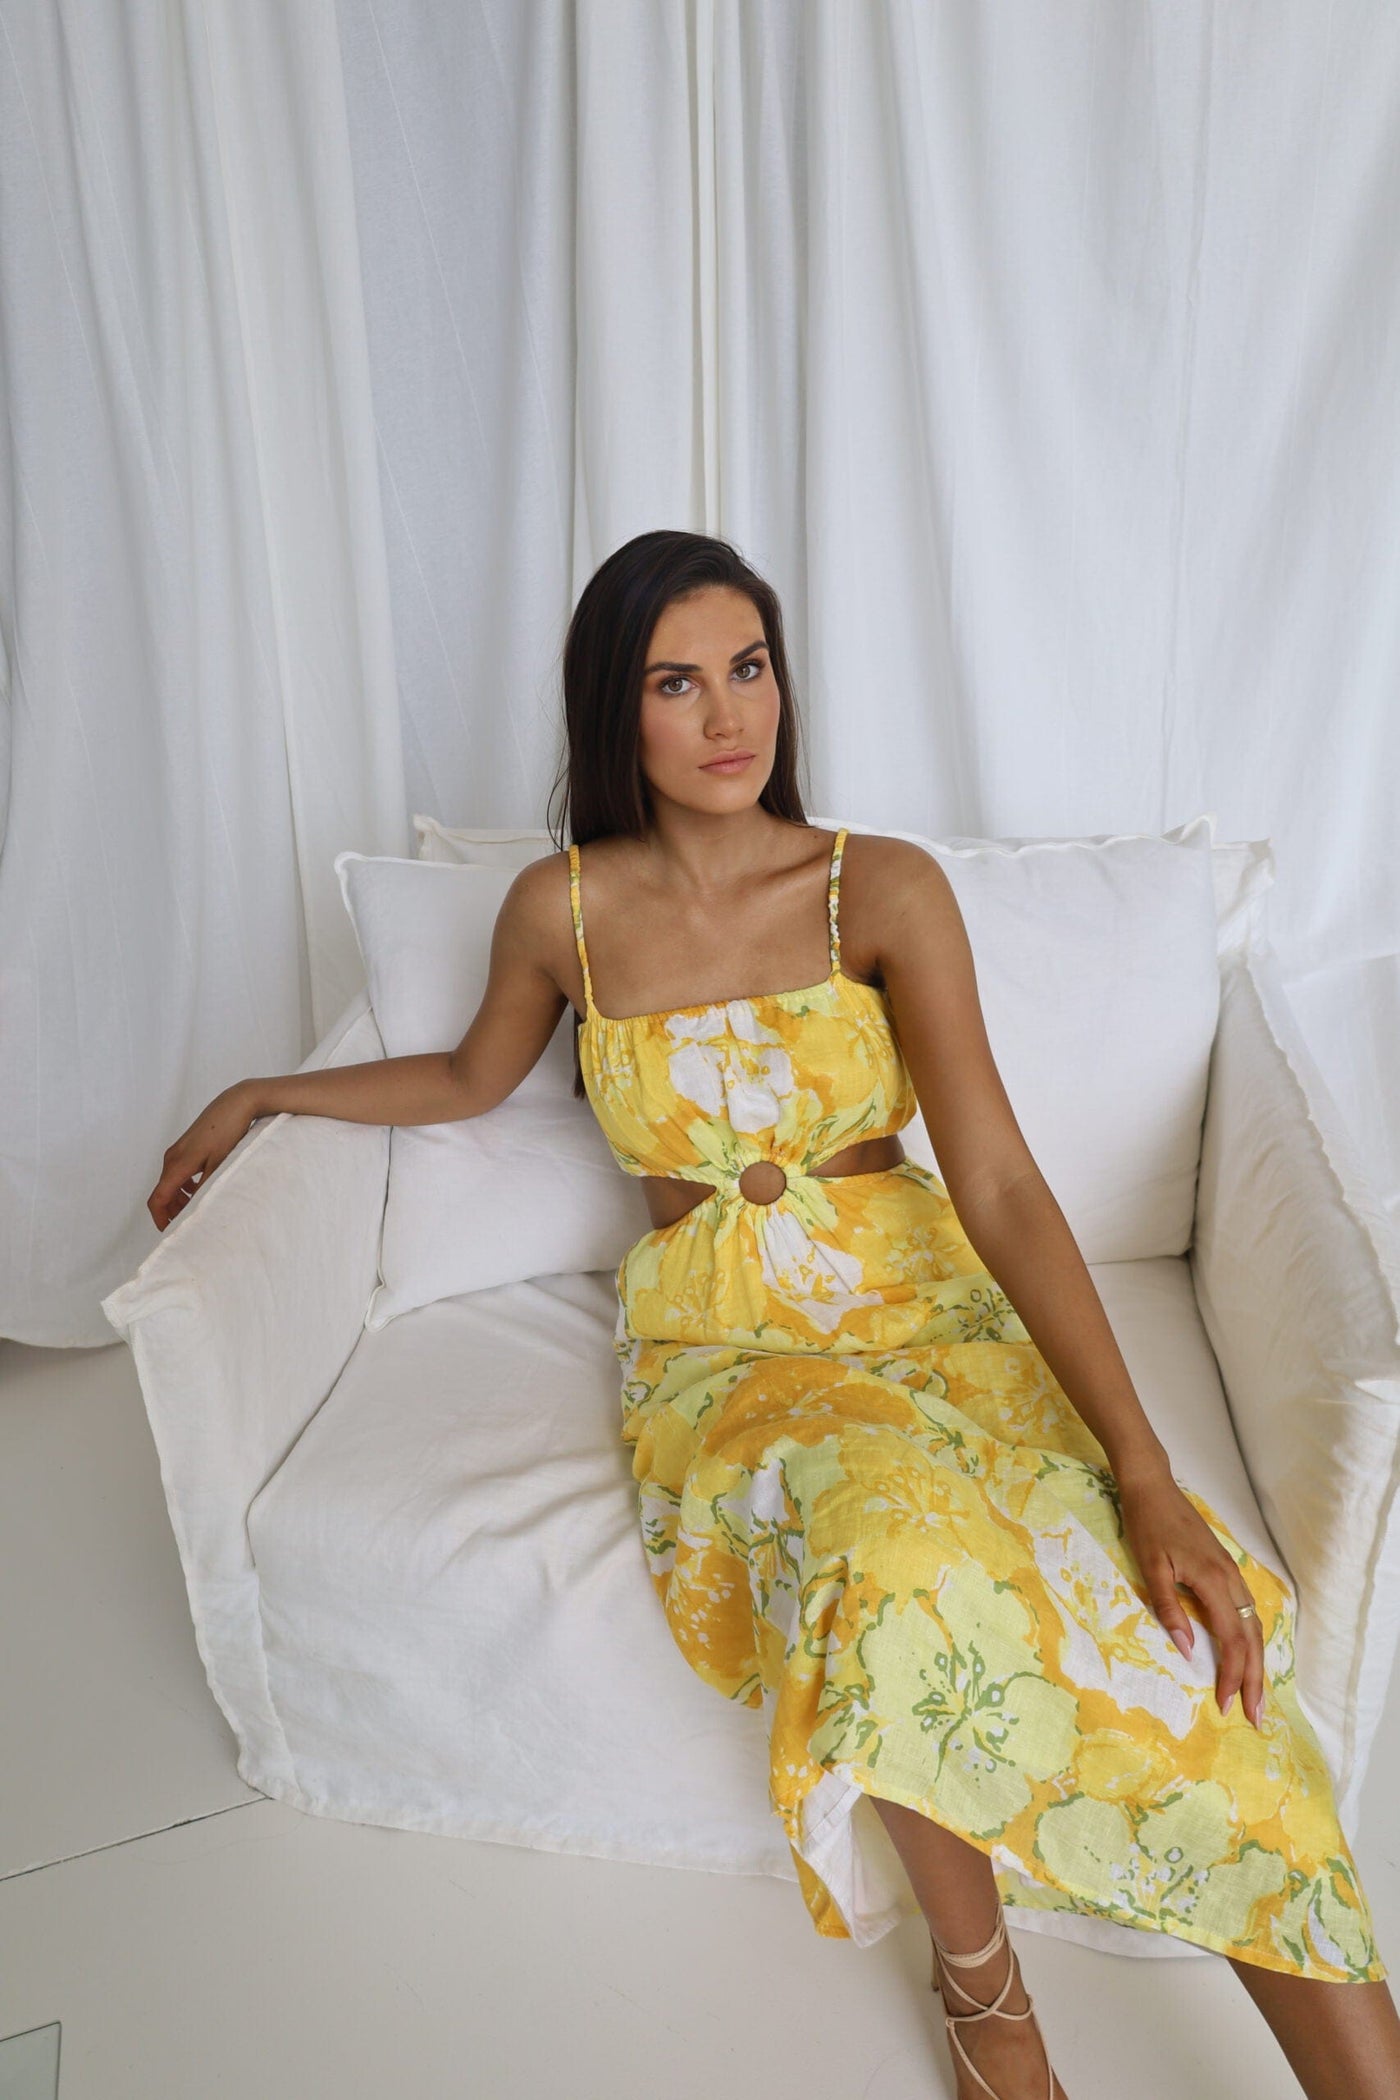 El Rio Maxi Dress Loretta Floral Print